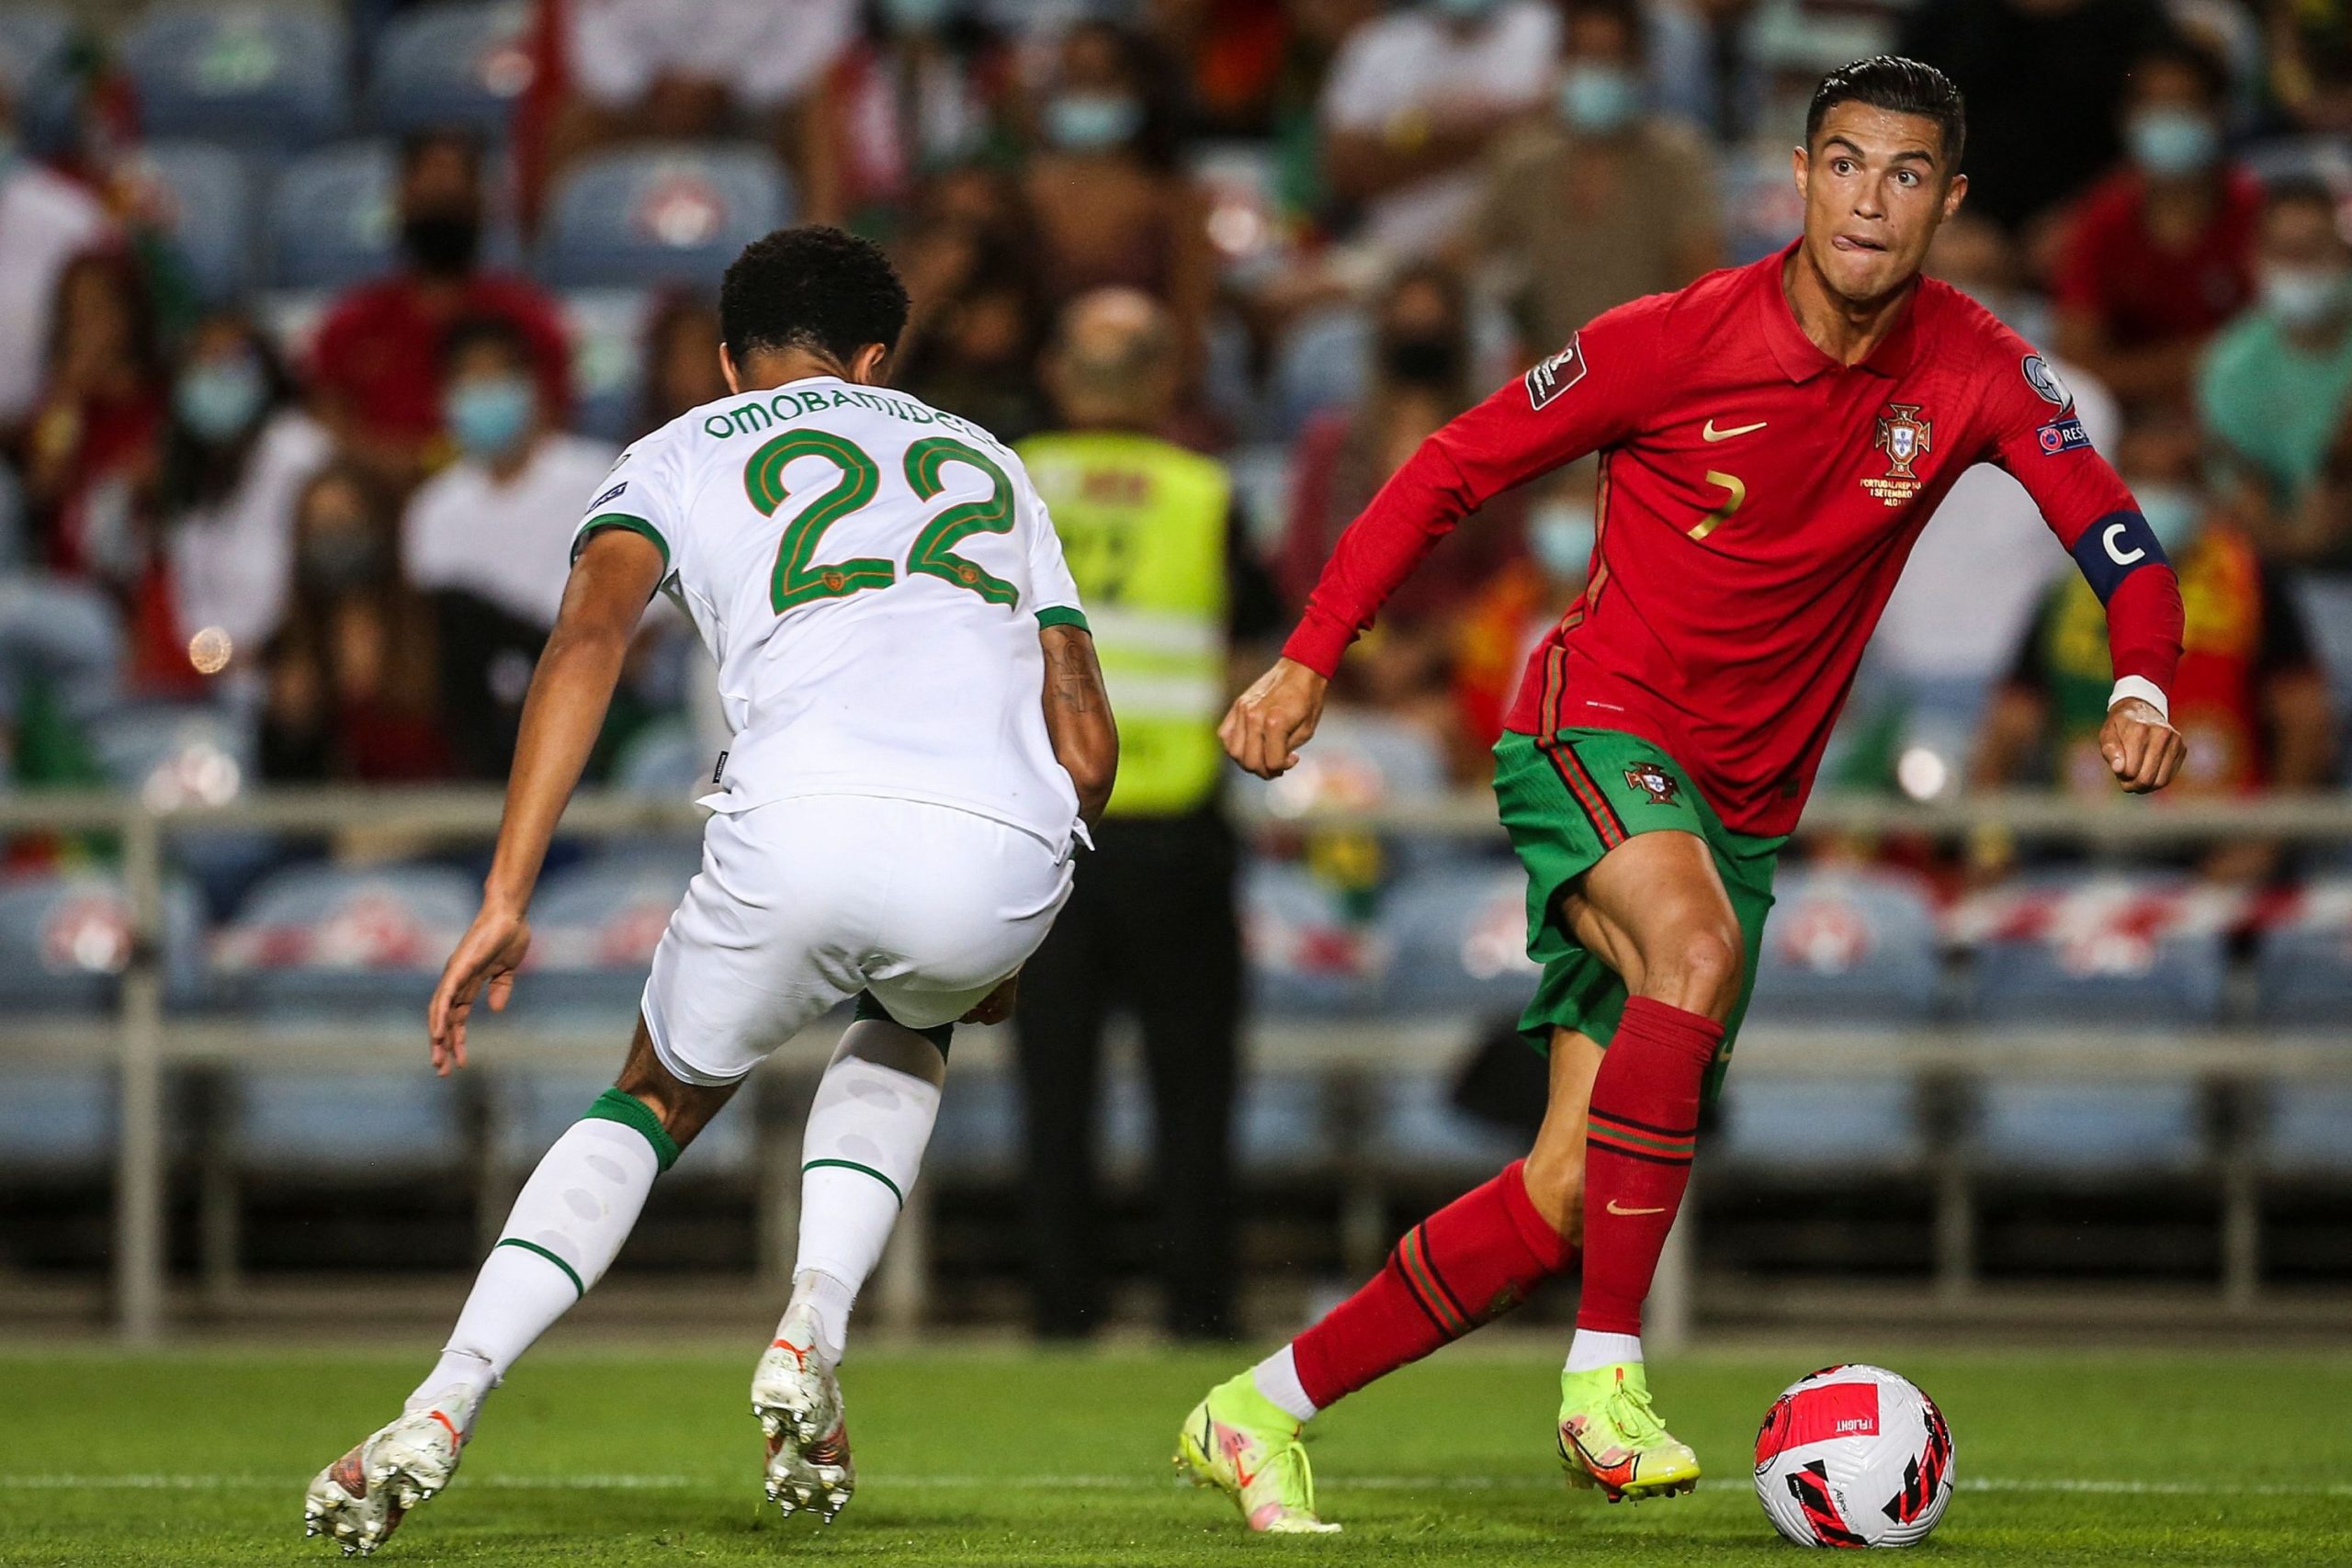 Highlight trận đấu Portugal vs North Macedonia ngày 30/03 | Xem lại trận đấu